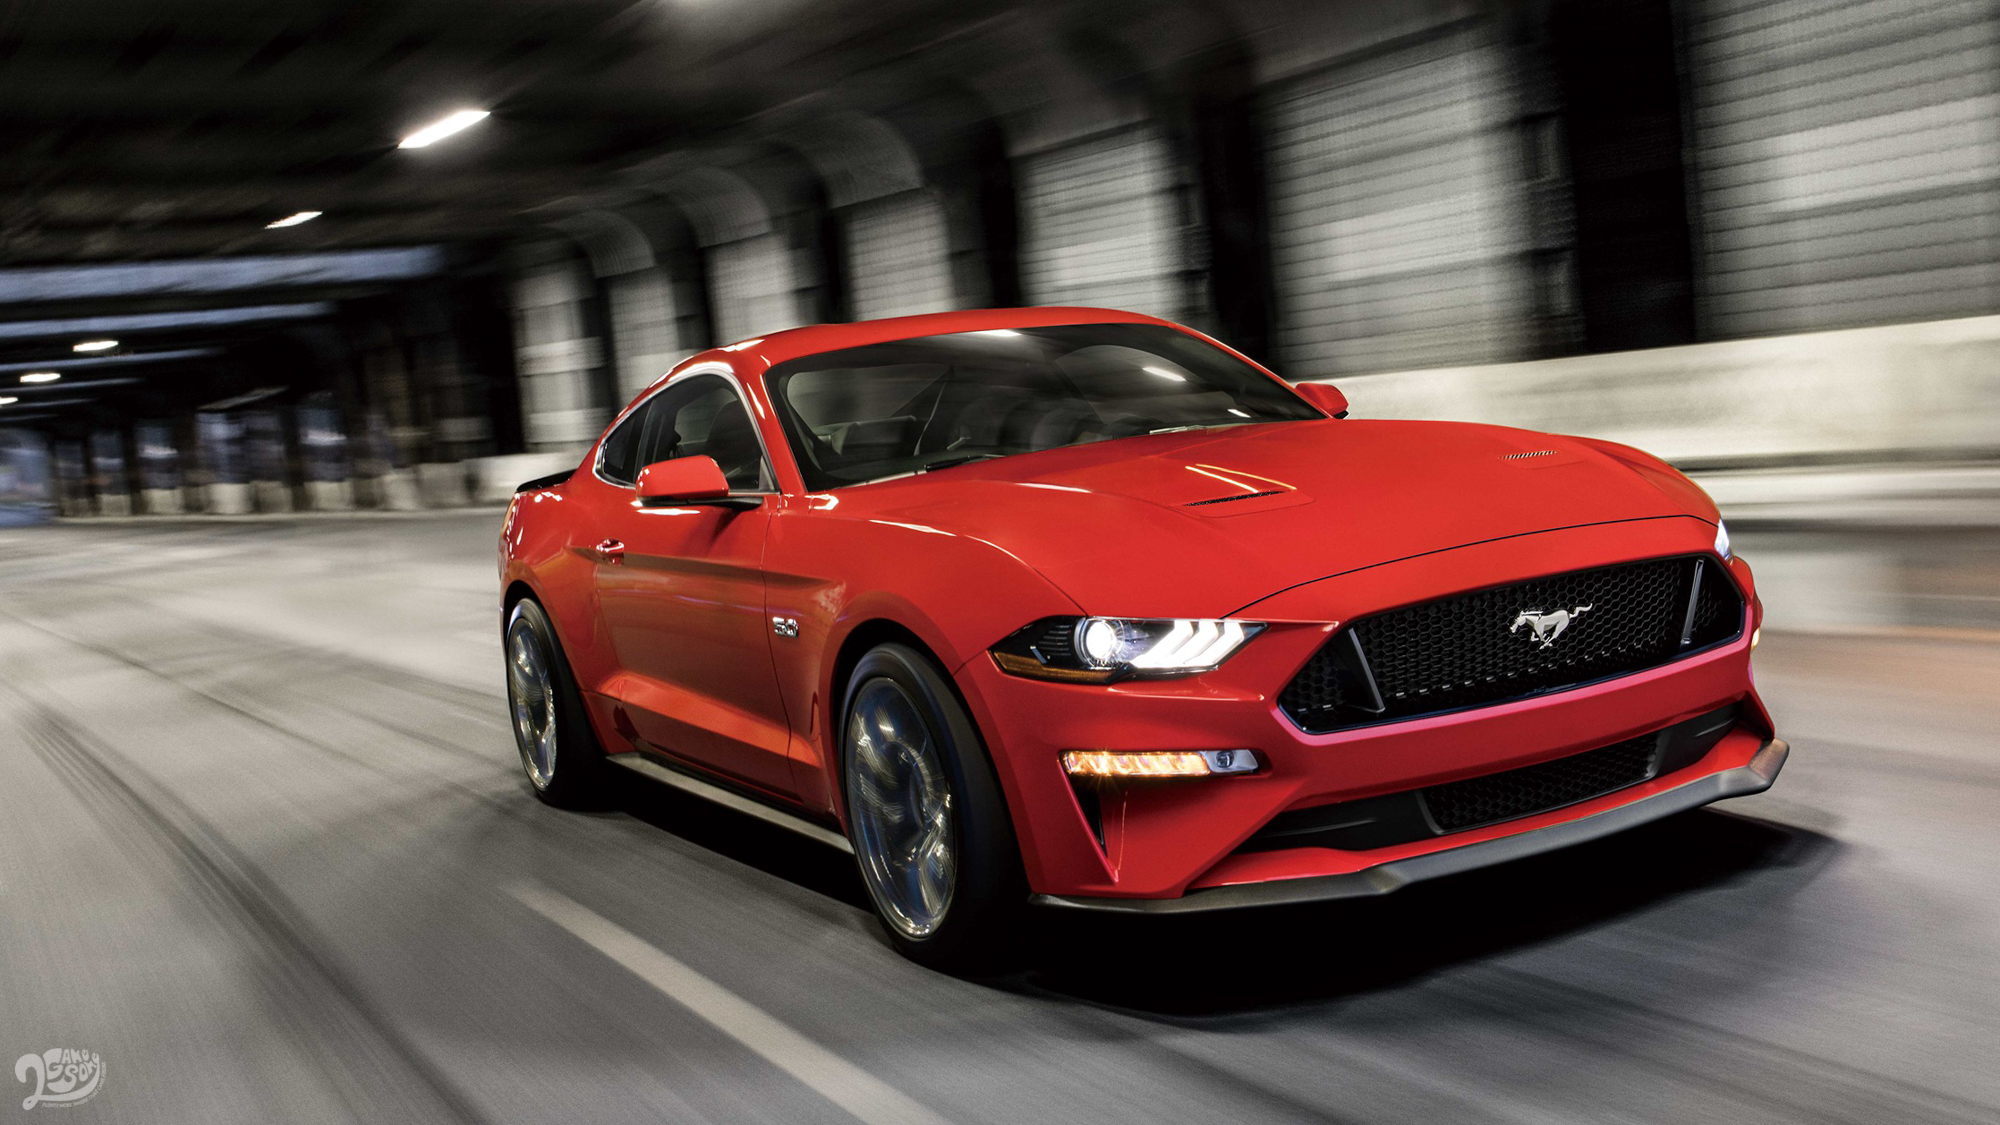 ▲ Ford Mustang 連續 7 年蟬聯「全球雙門跑車銷售冠軍」